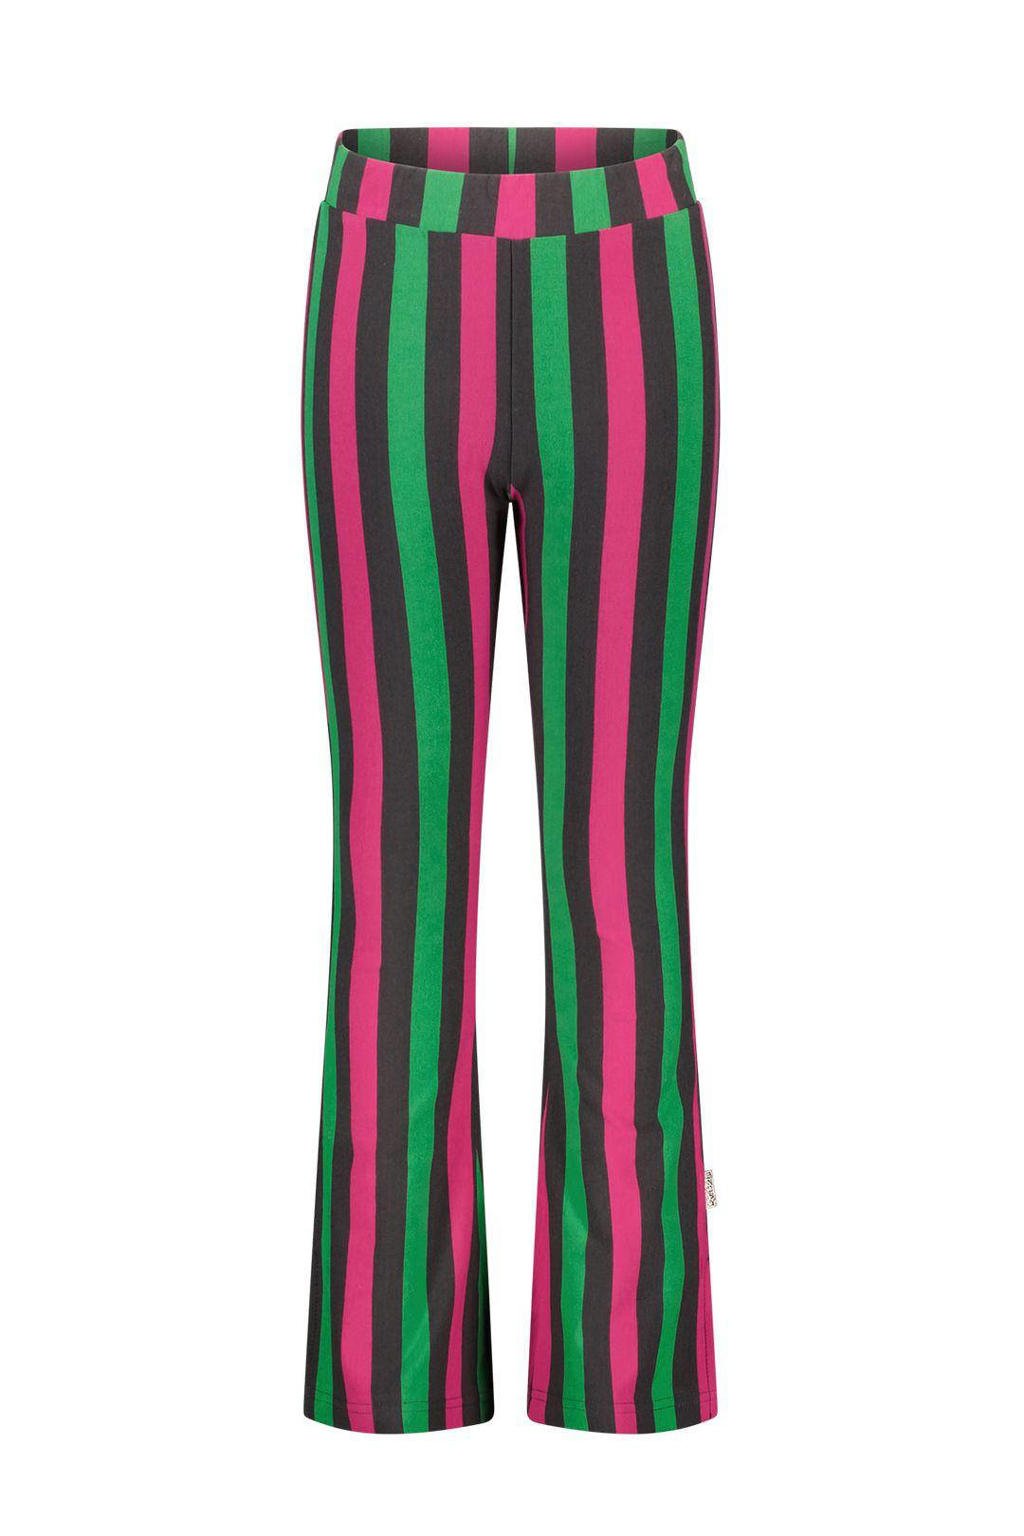 Roze, antraciet en groene meisjes B.Nosy gestreepte flared broek van stretchkatoen met regular waist en elastische tailleband